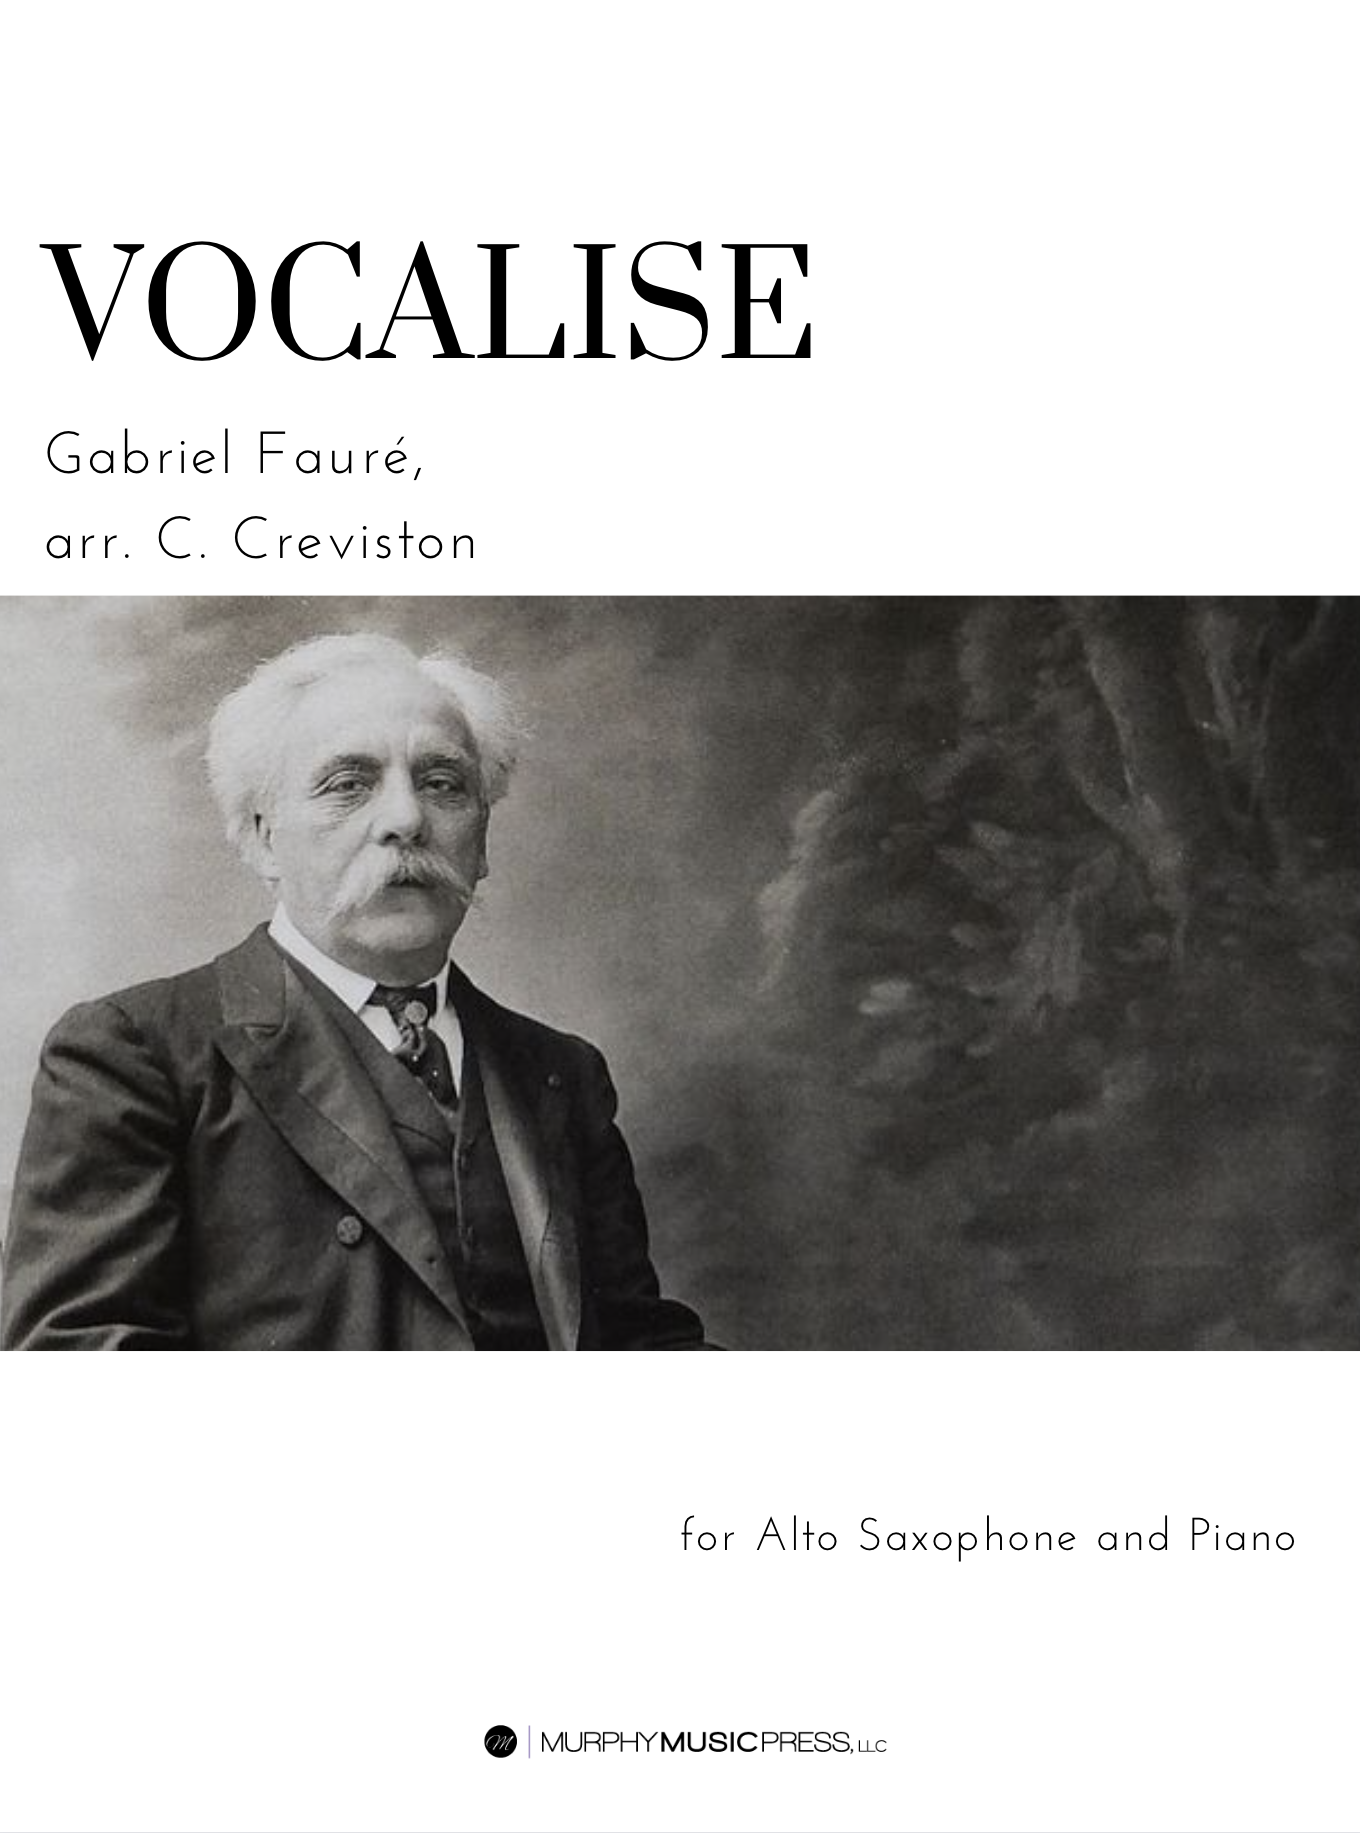 Vocalise-étude by Gabriel Fauré, arr. Creviston 